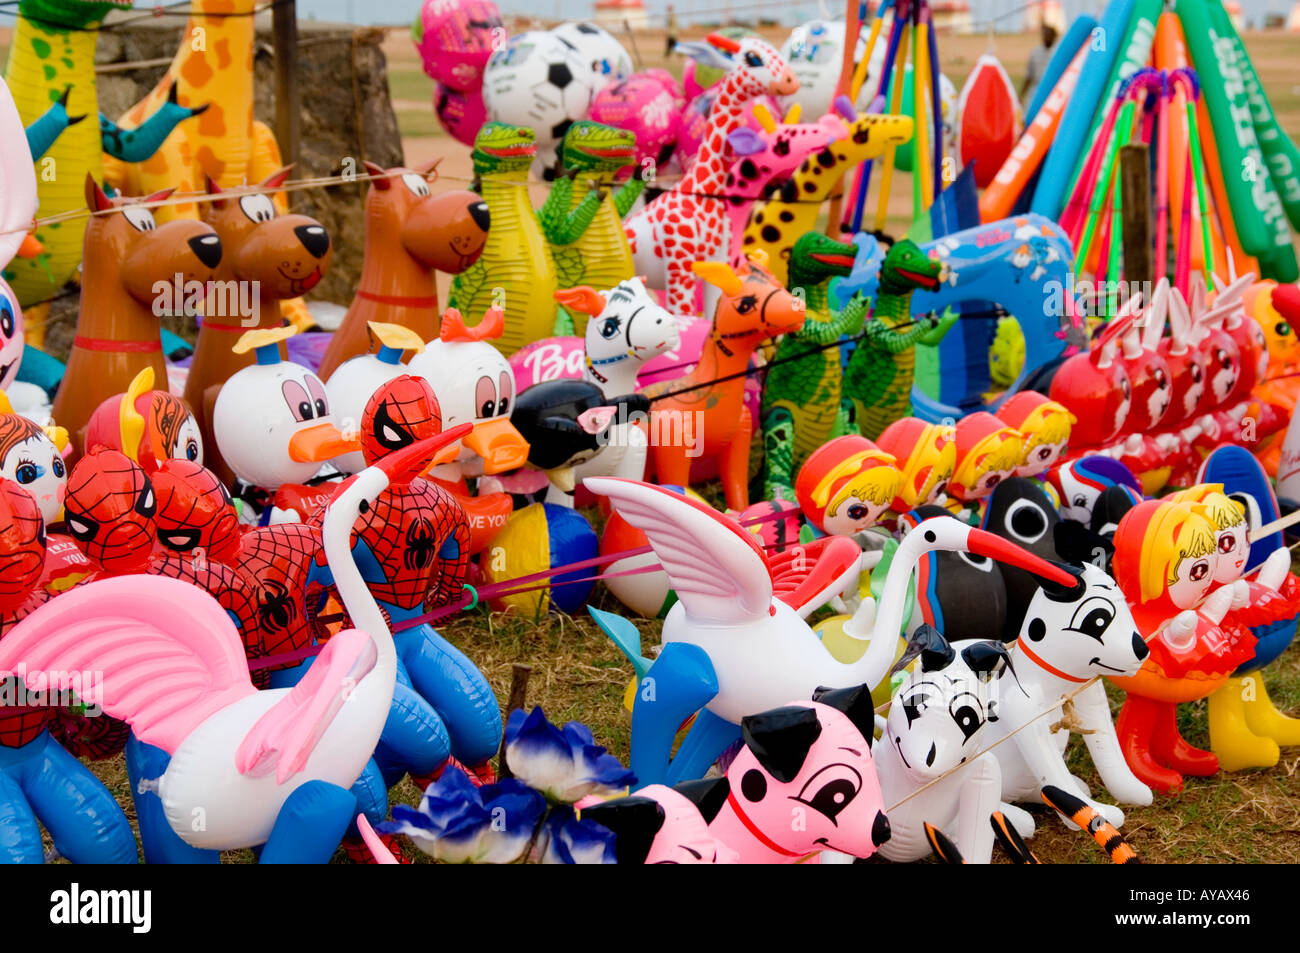 Animali gonfiabili e giocattoli in vendita sulla spiaggia in